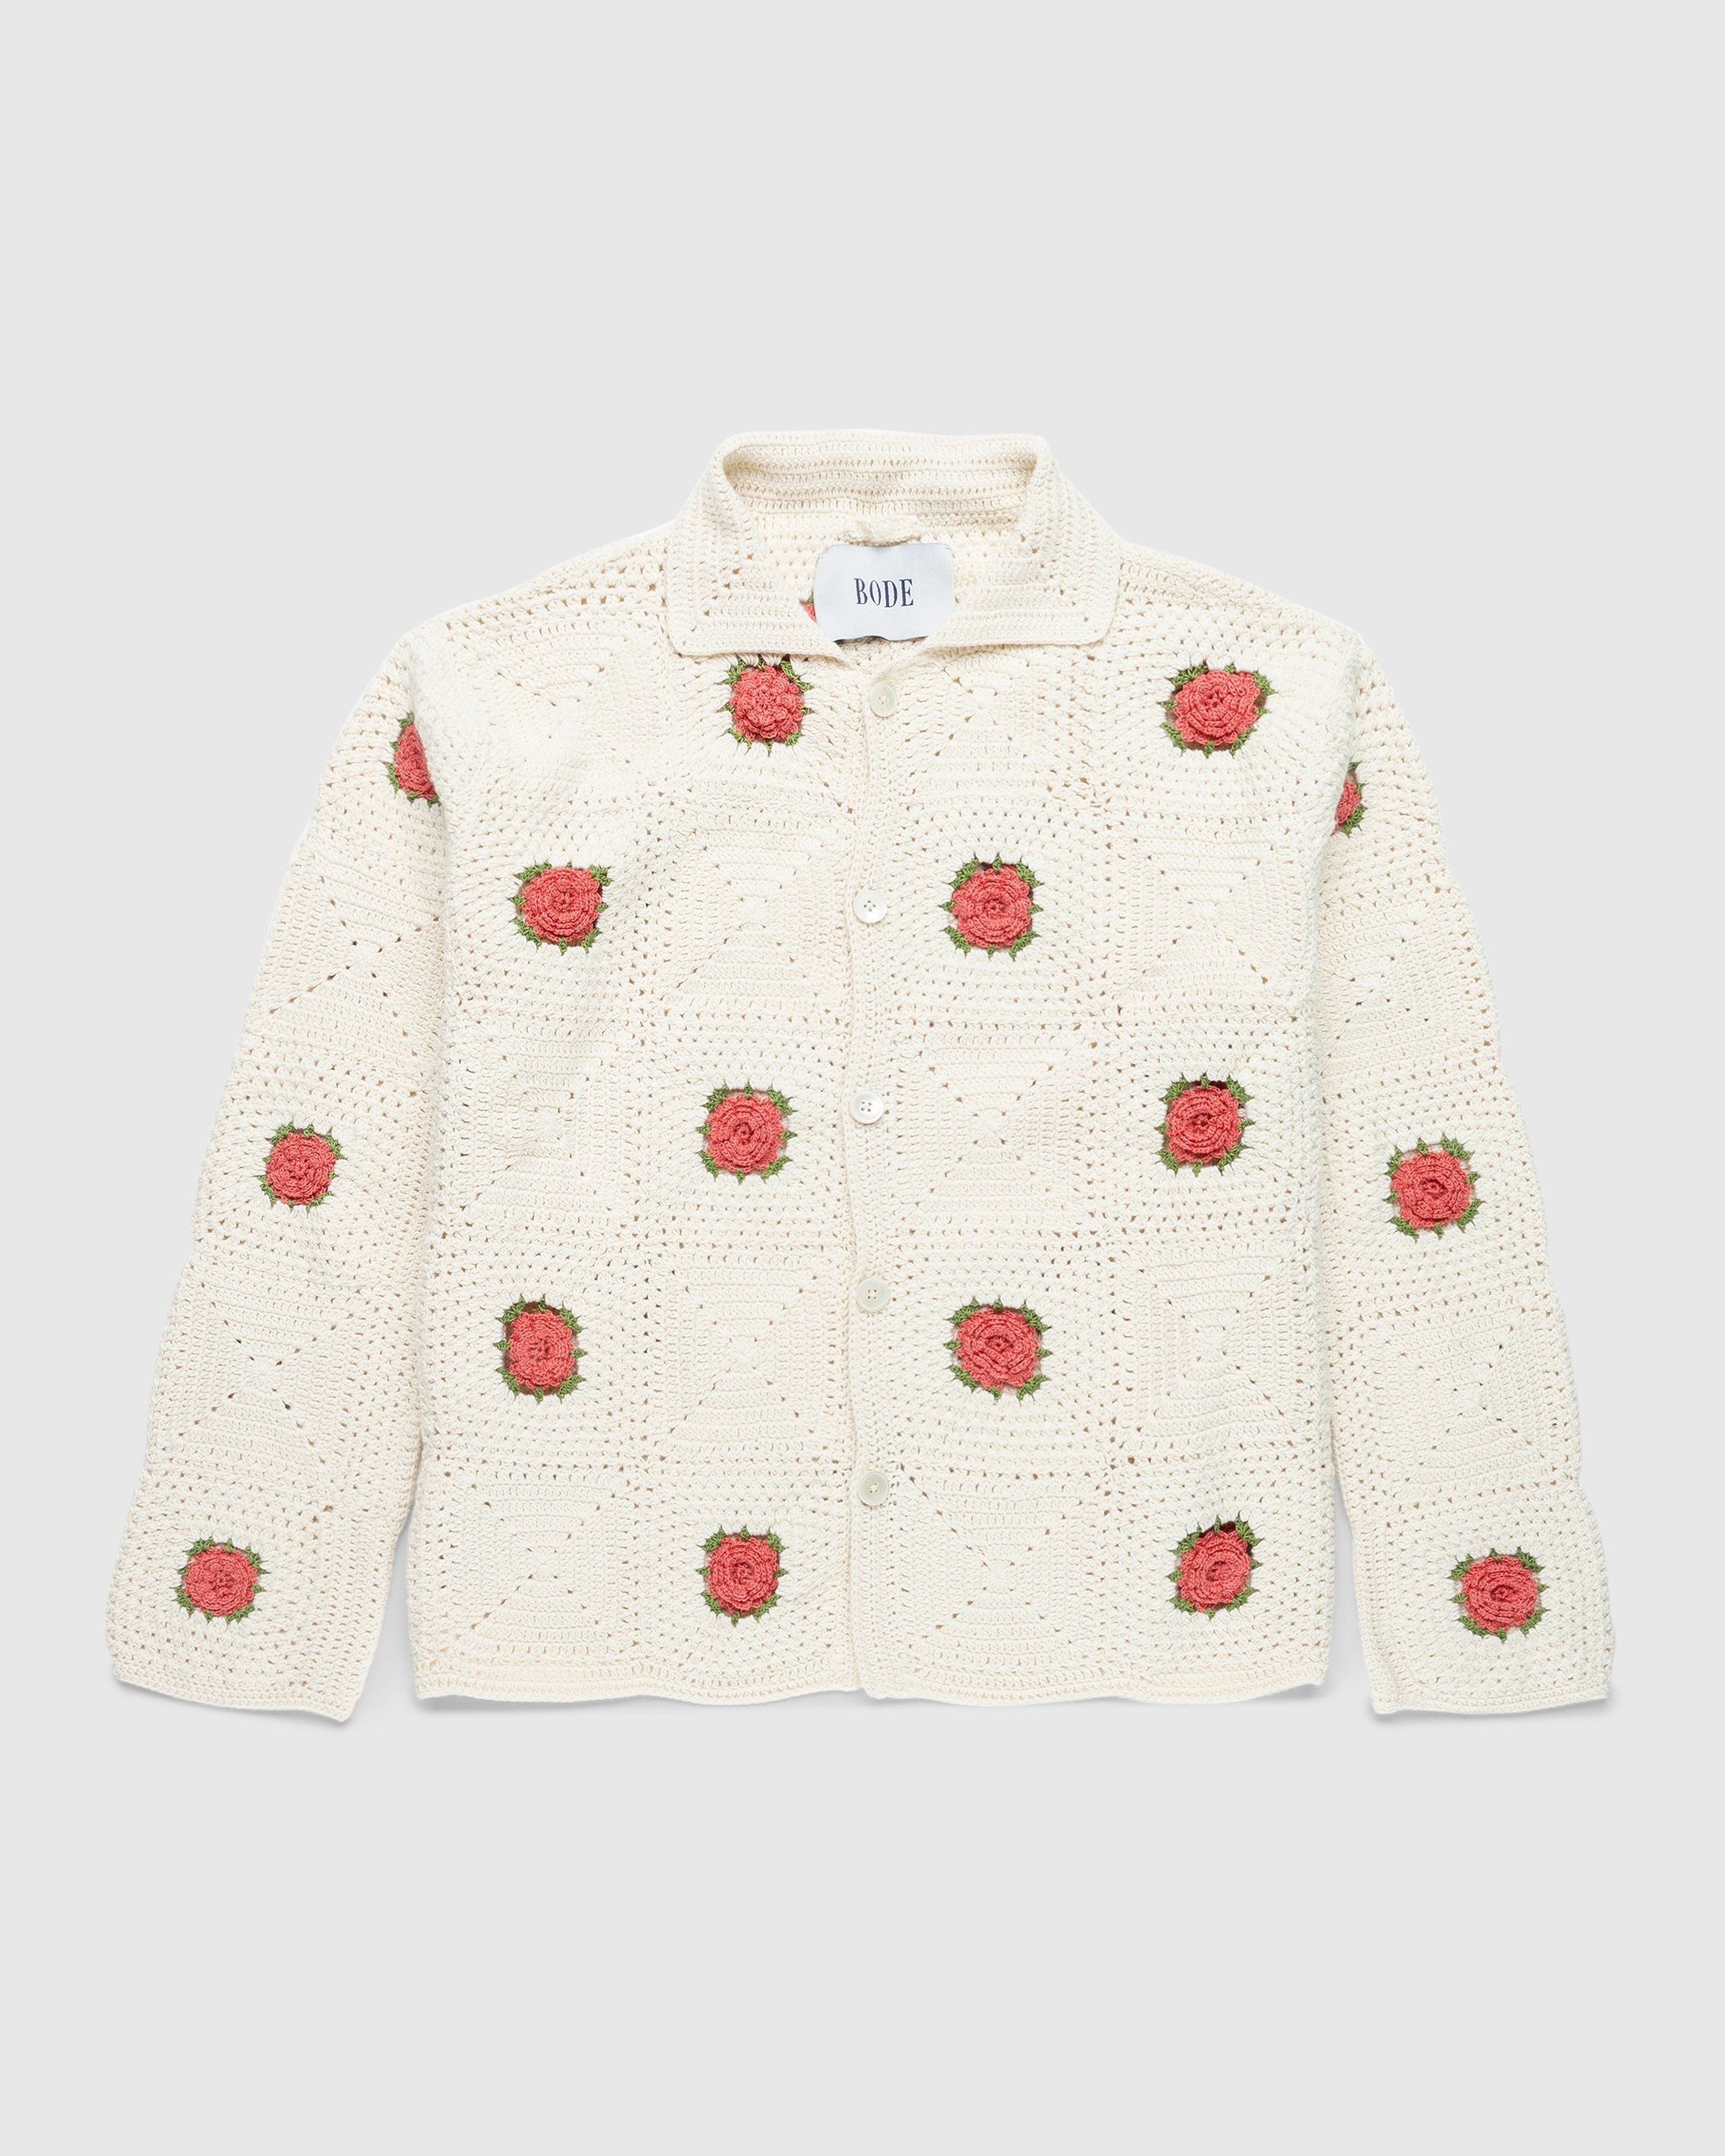 Bode – Rosette Crochet Long-Sleeve Shirt White - Shirts - Multi - Image 1